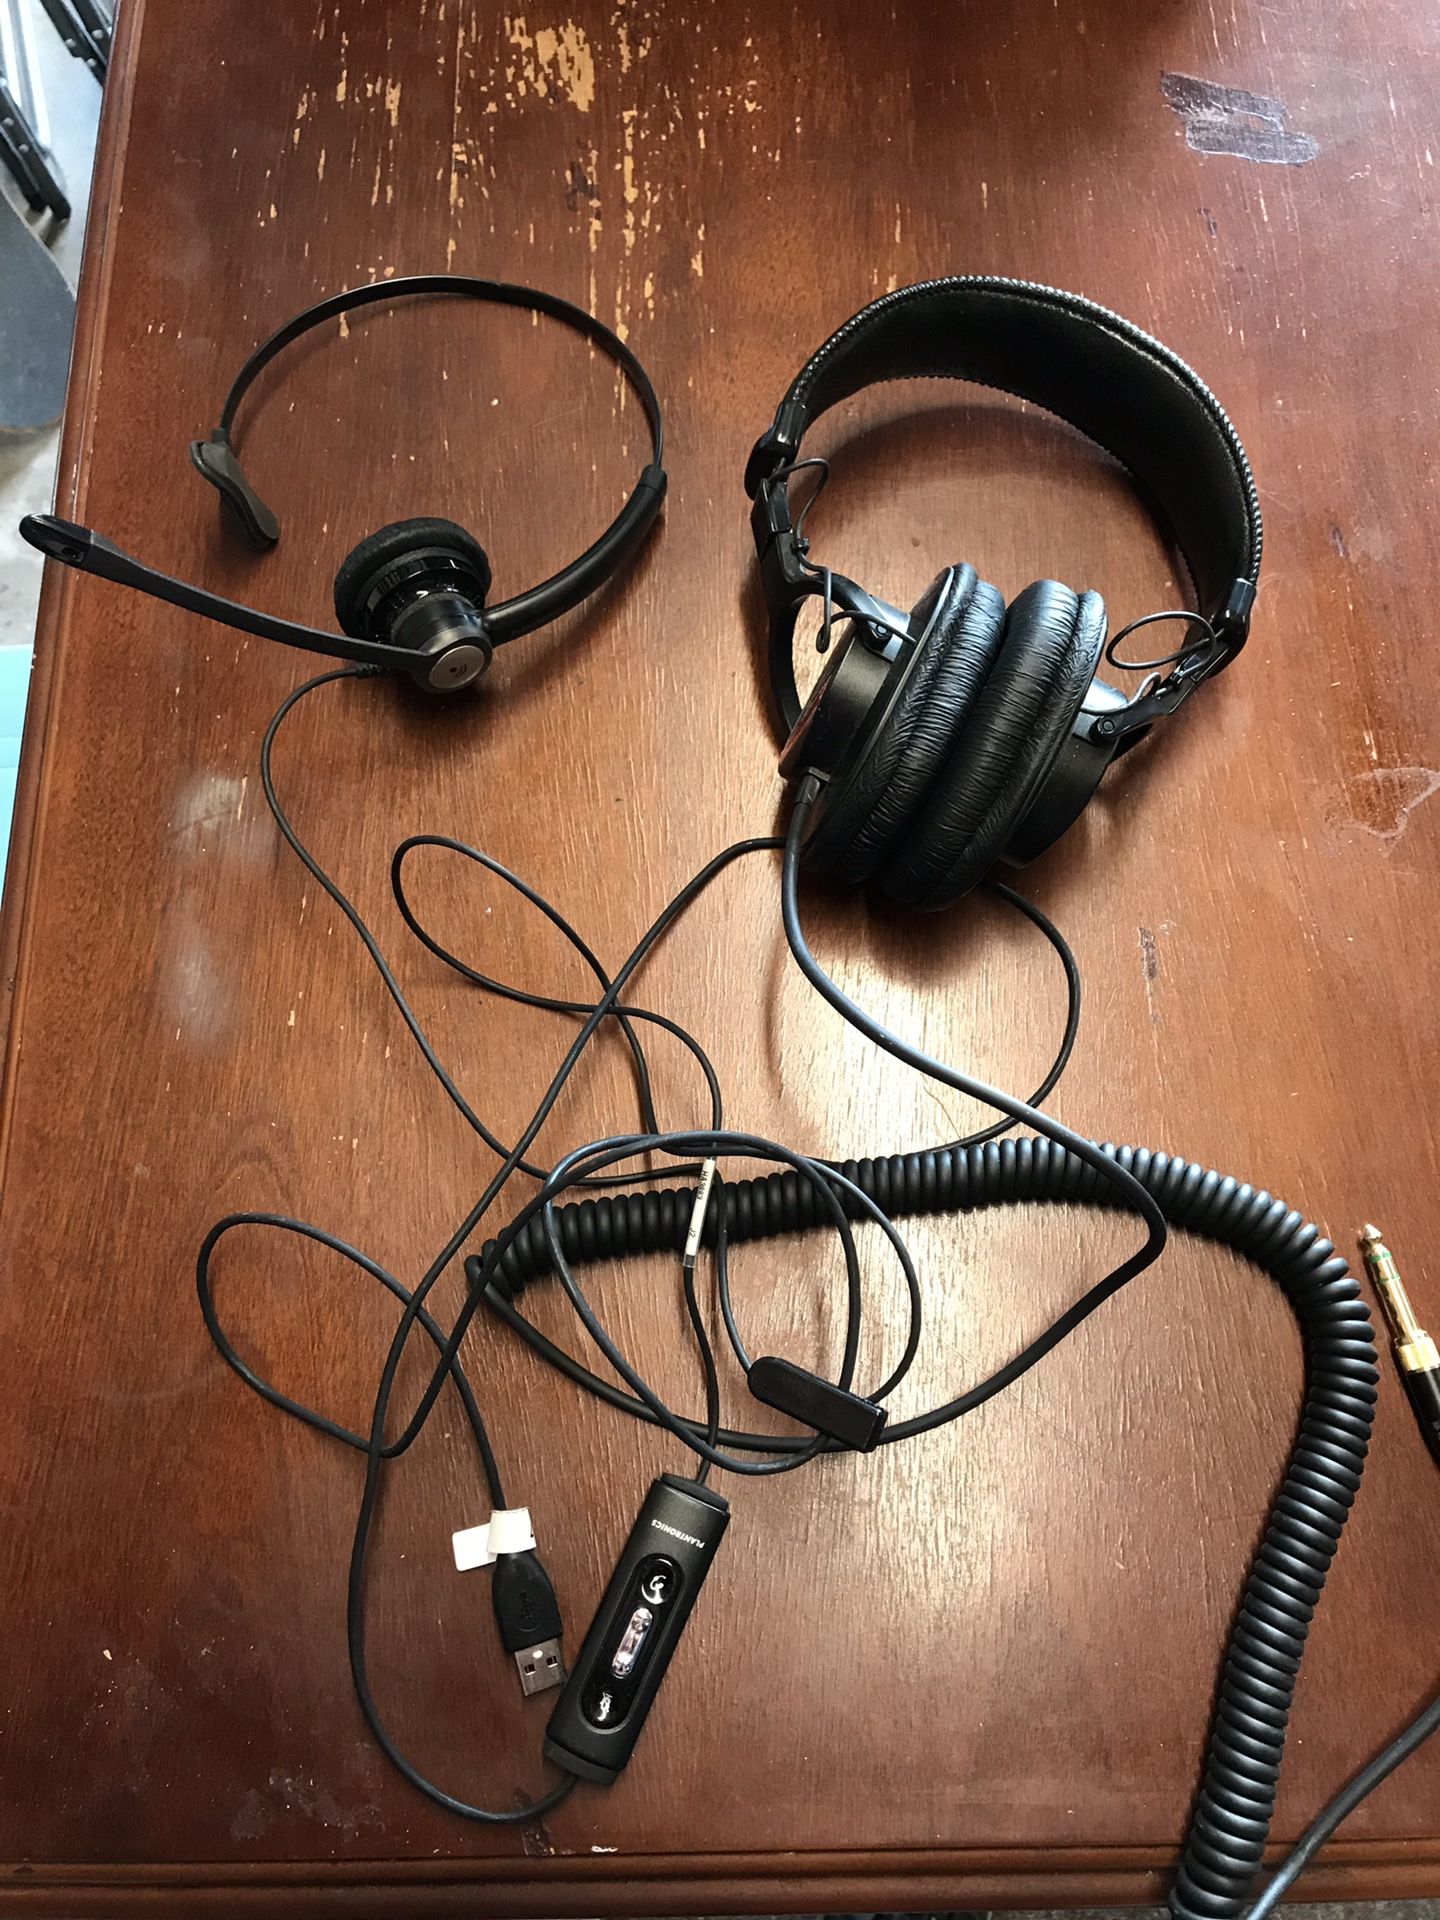 Plantronics headset and Sony headphones